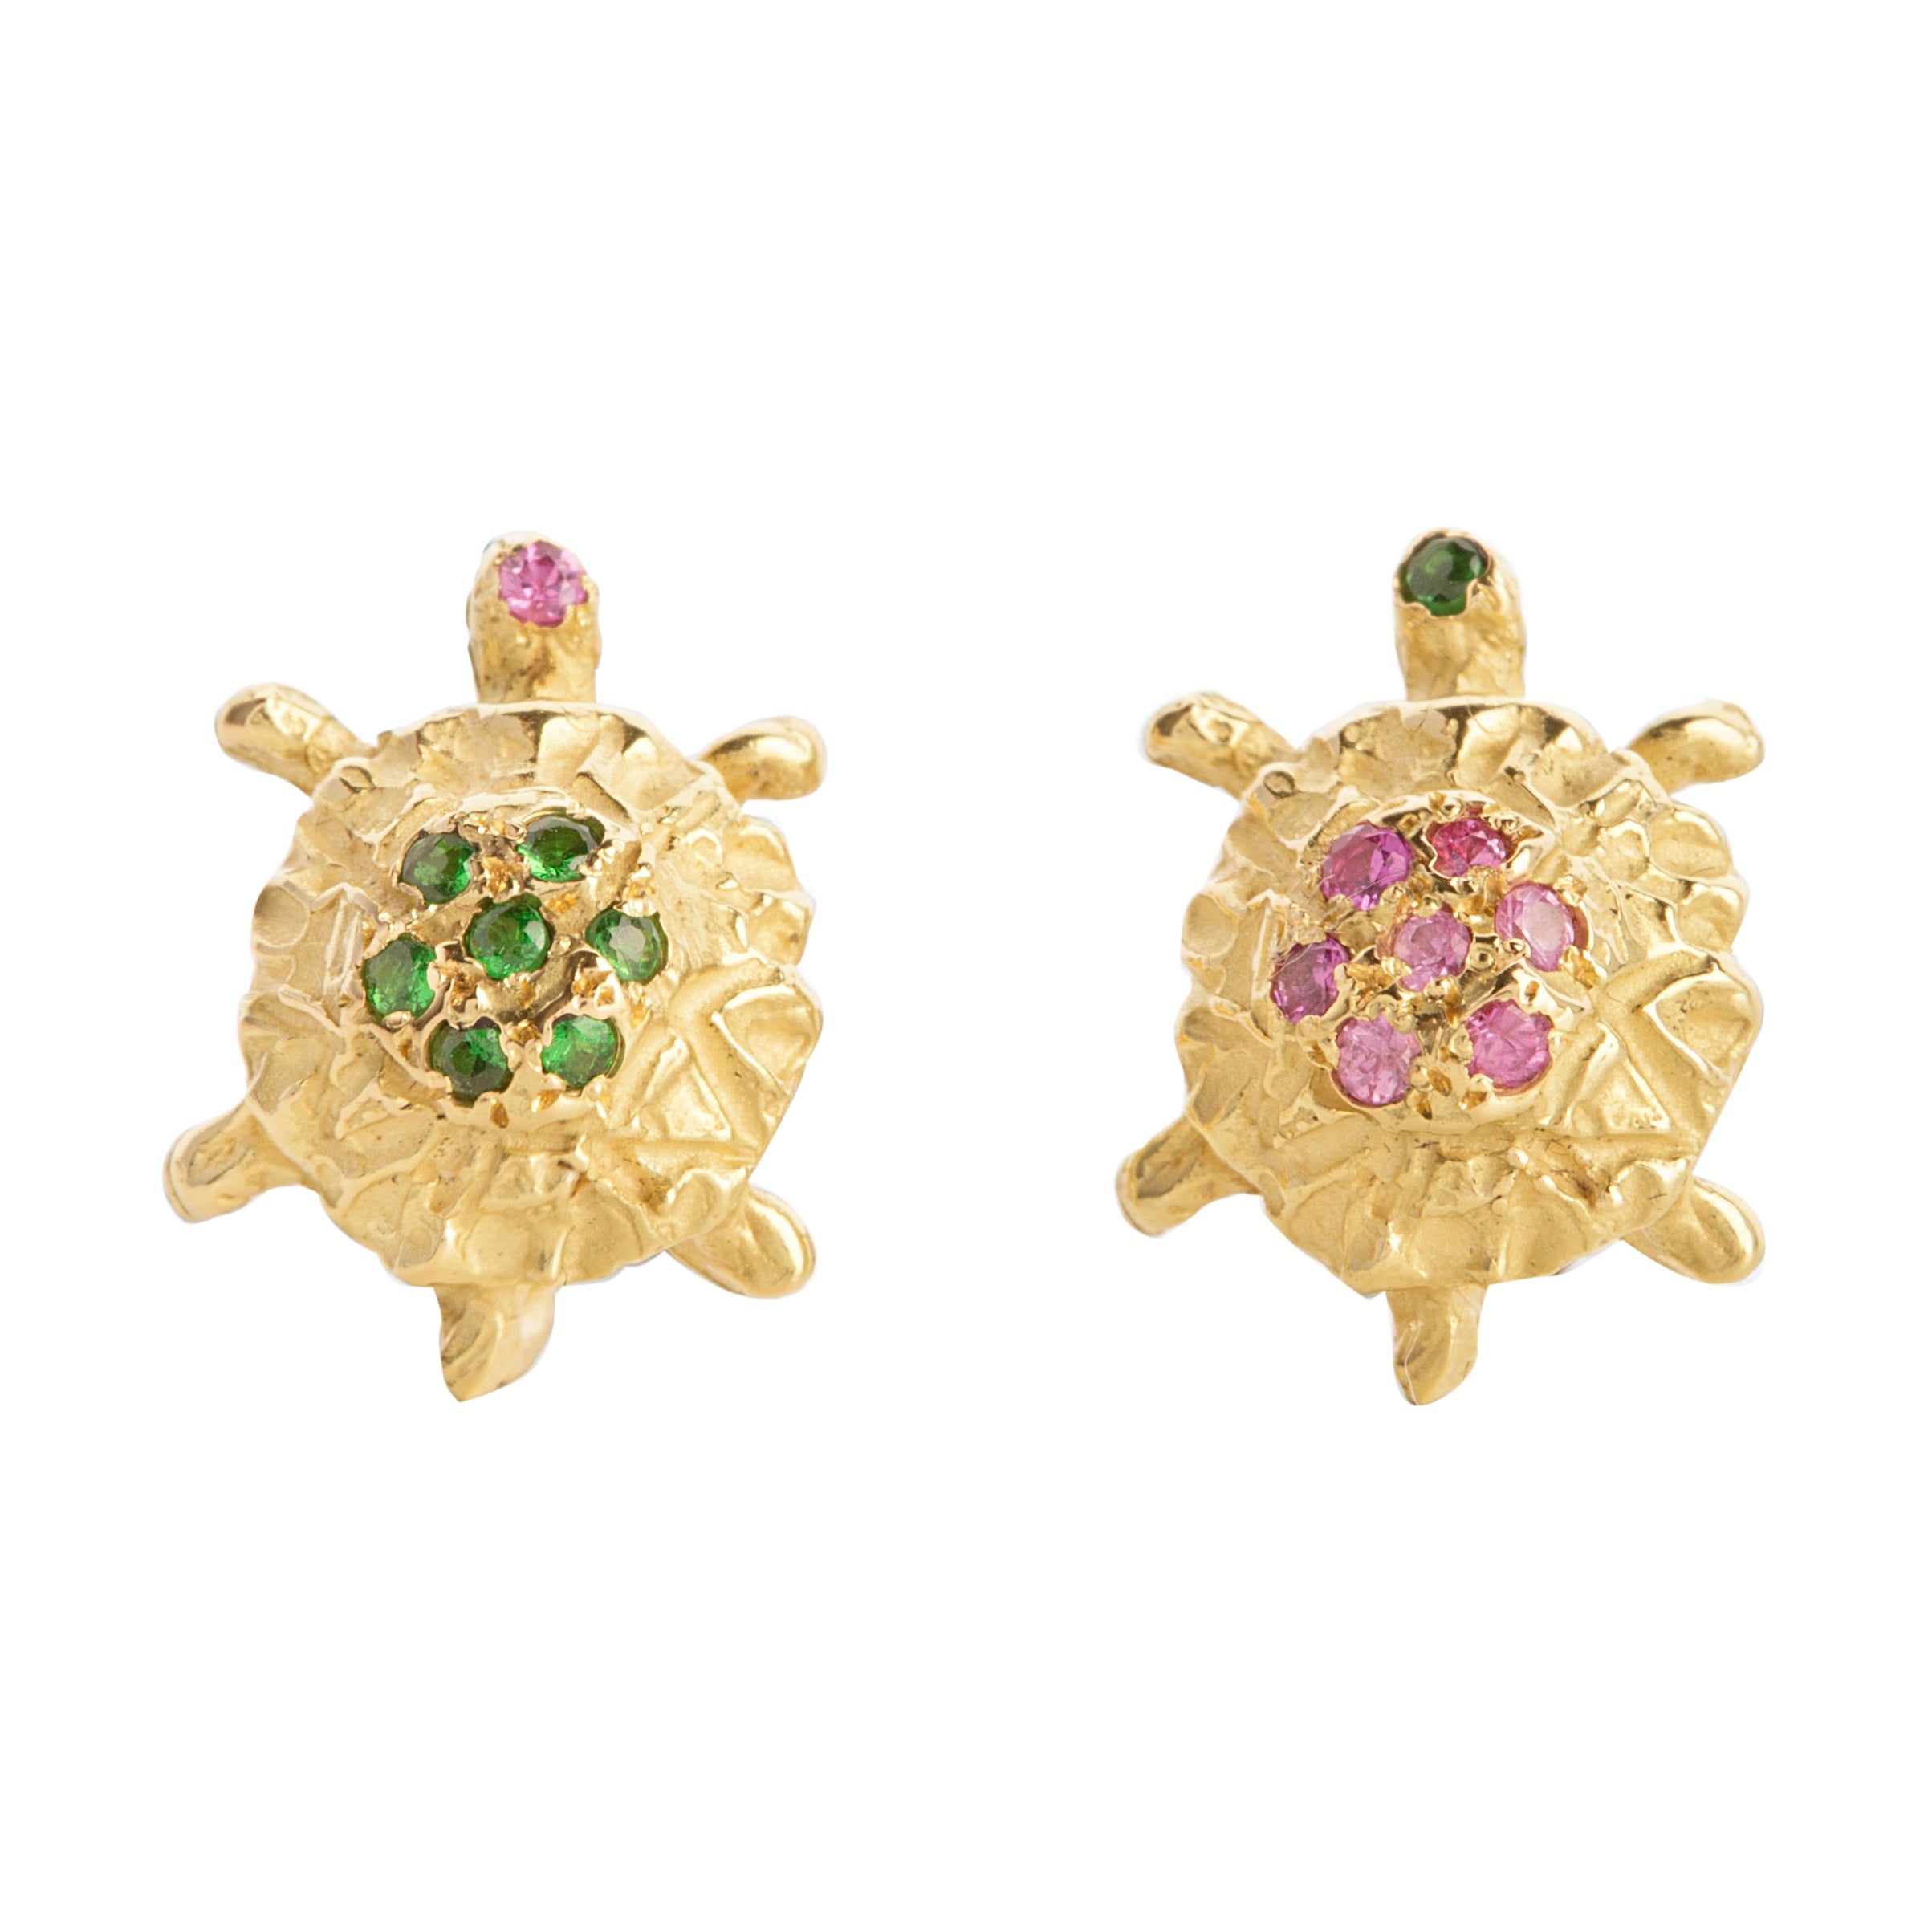 Clous d'oreilles martelés en or 18 carats avec tsavorite verte et tourmaline rose en forme de tortue de lune